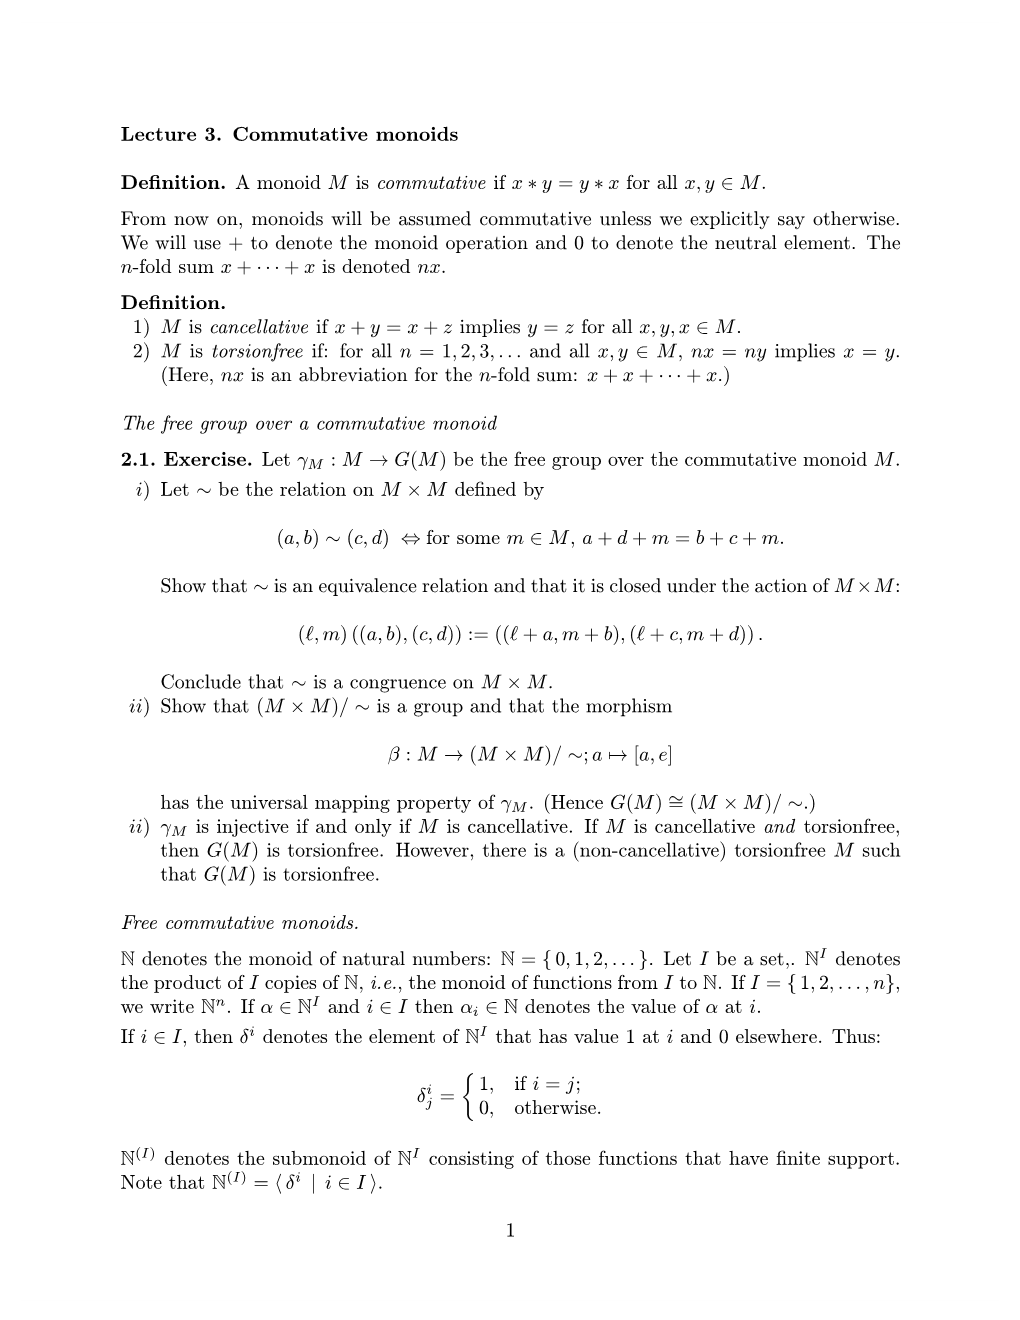 Lecture 3. Commutative Monoids Definition. a Monoid M Is